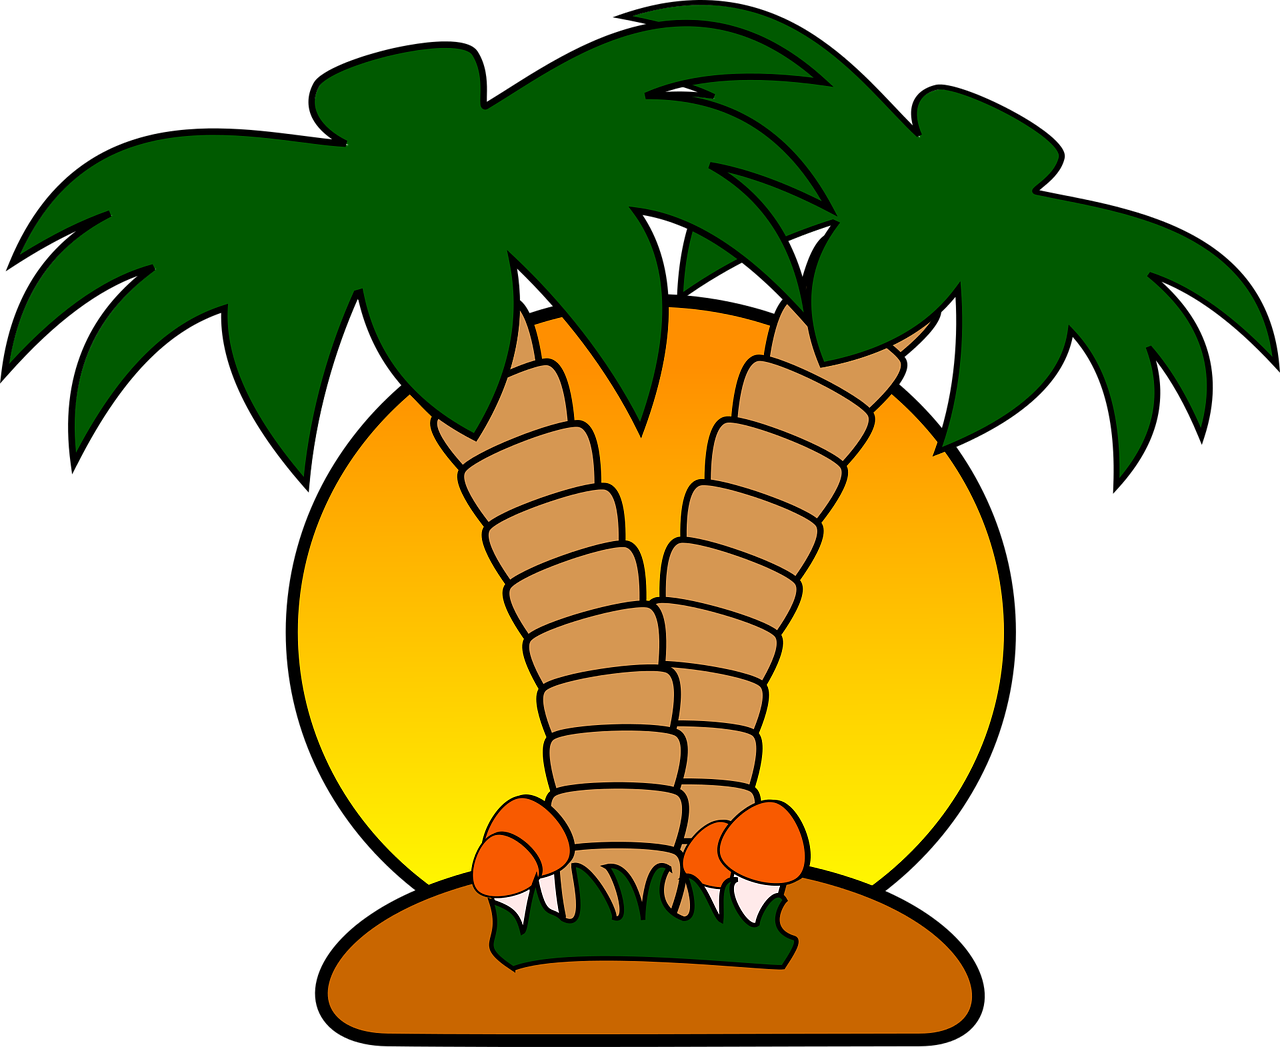 Island clipart island hawaiian. Mushroom palm tree summer